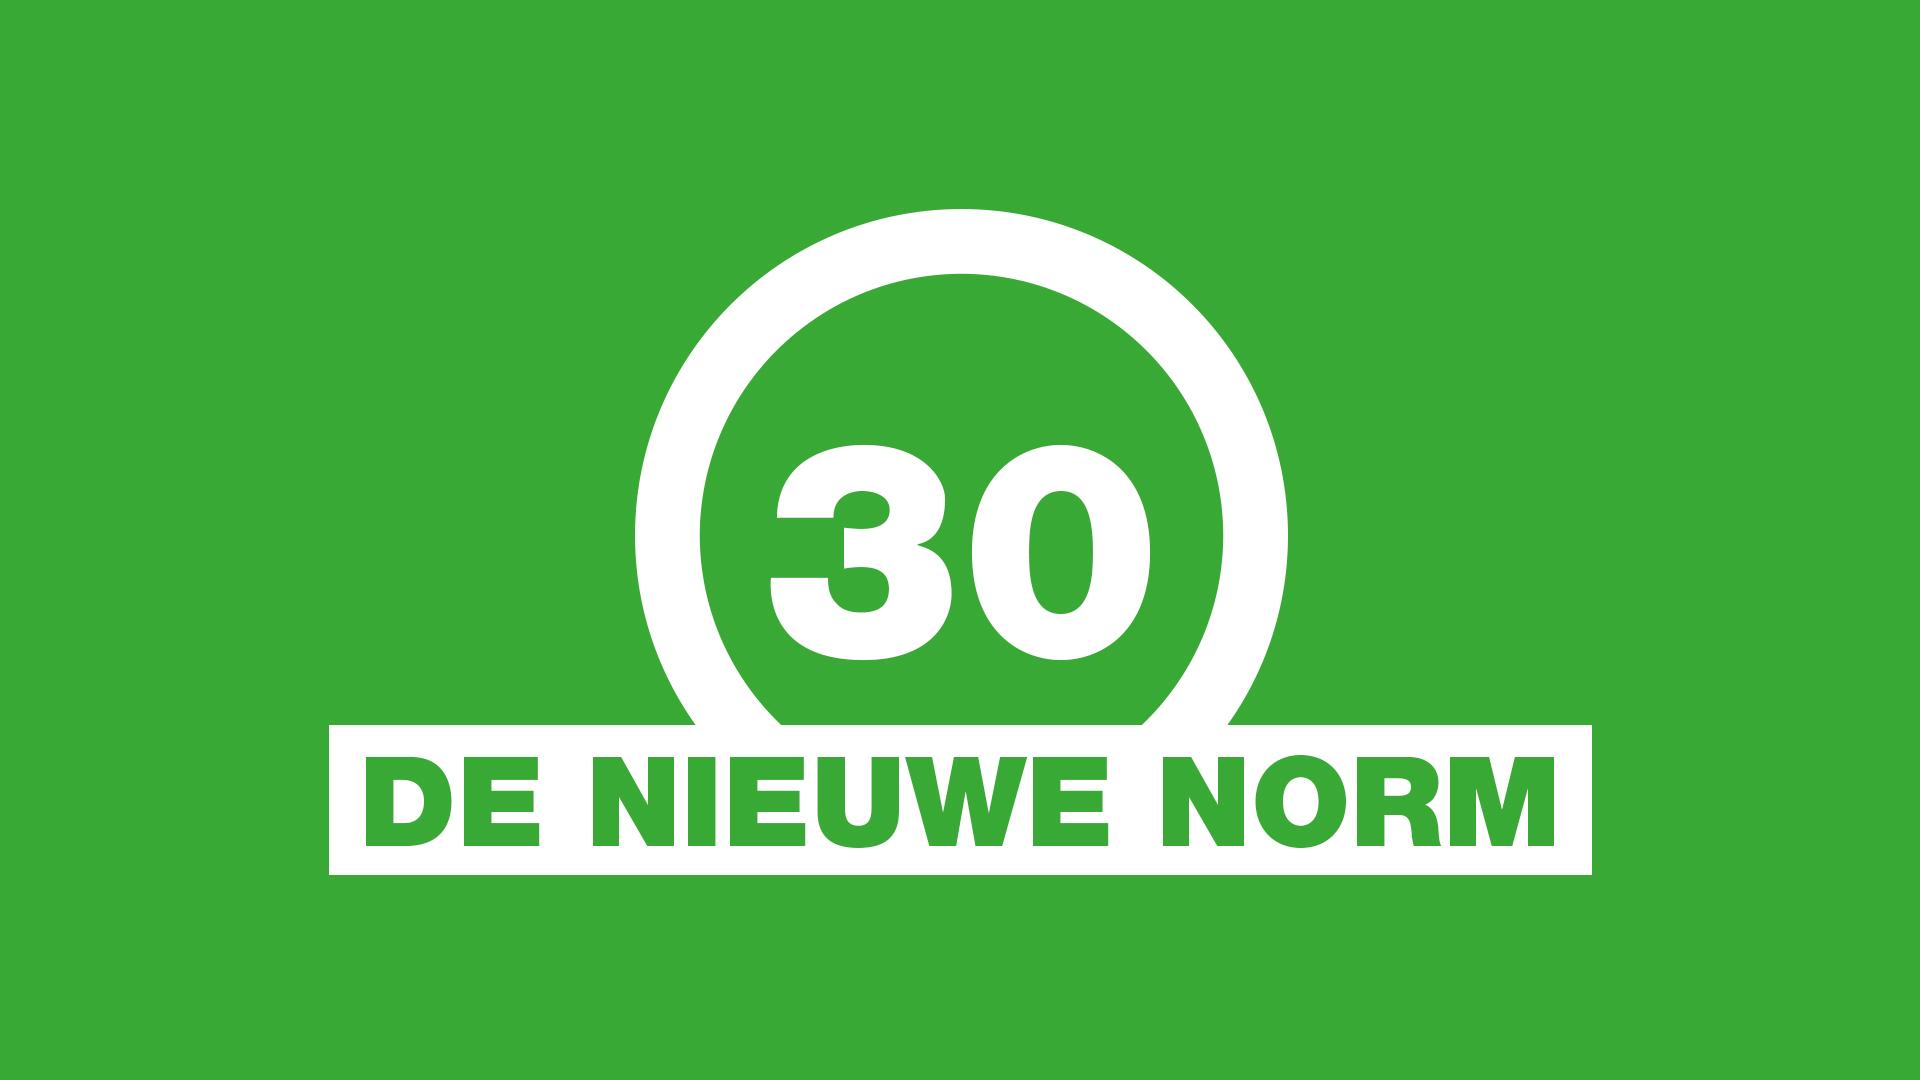 30 De Nieuwe Norm